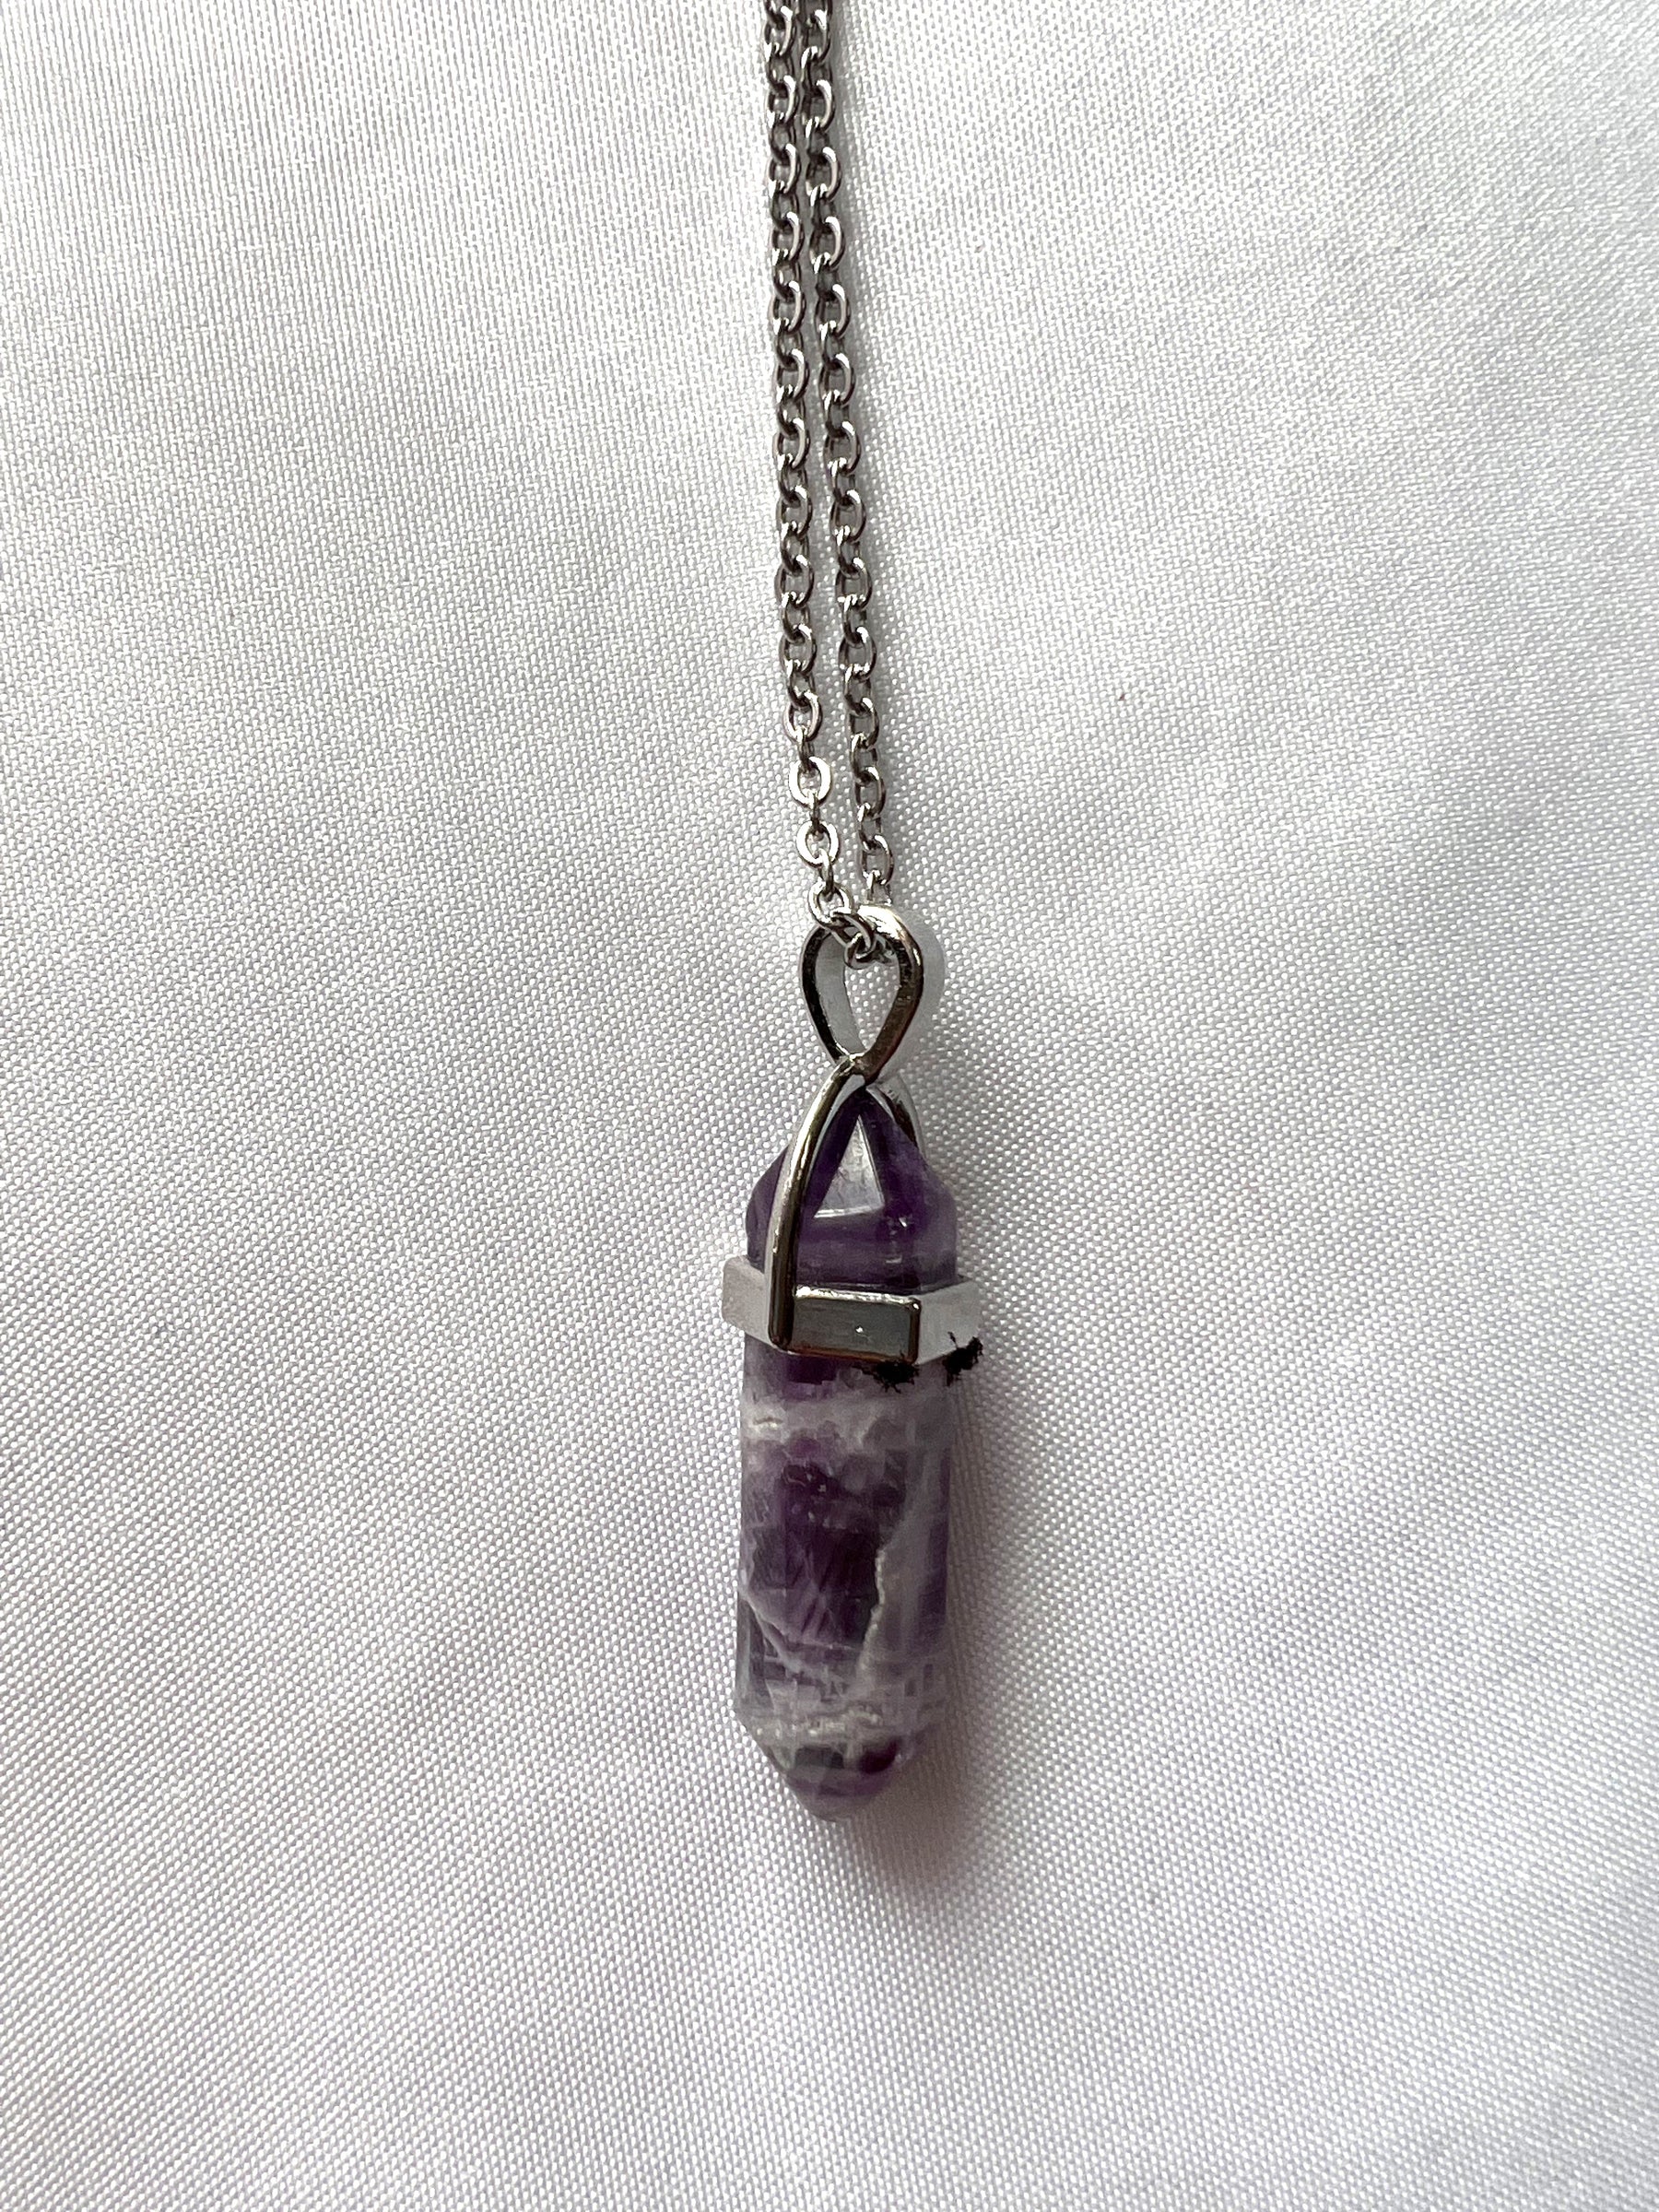 Fluorite crystal pendulum necklace